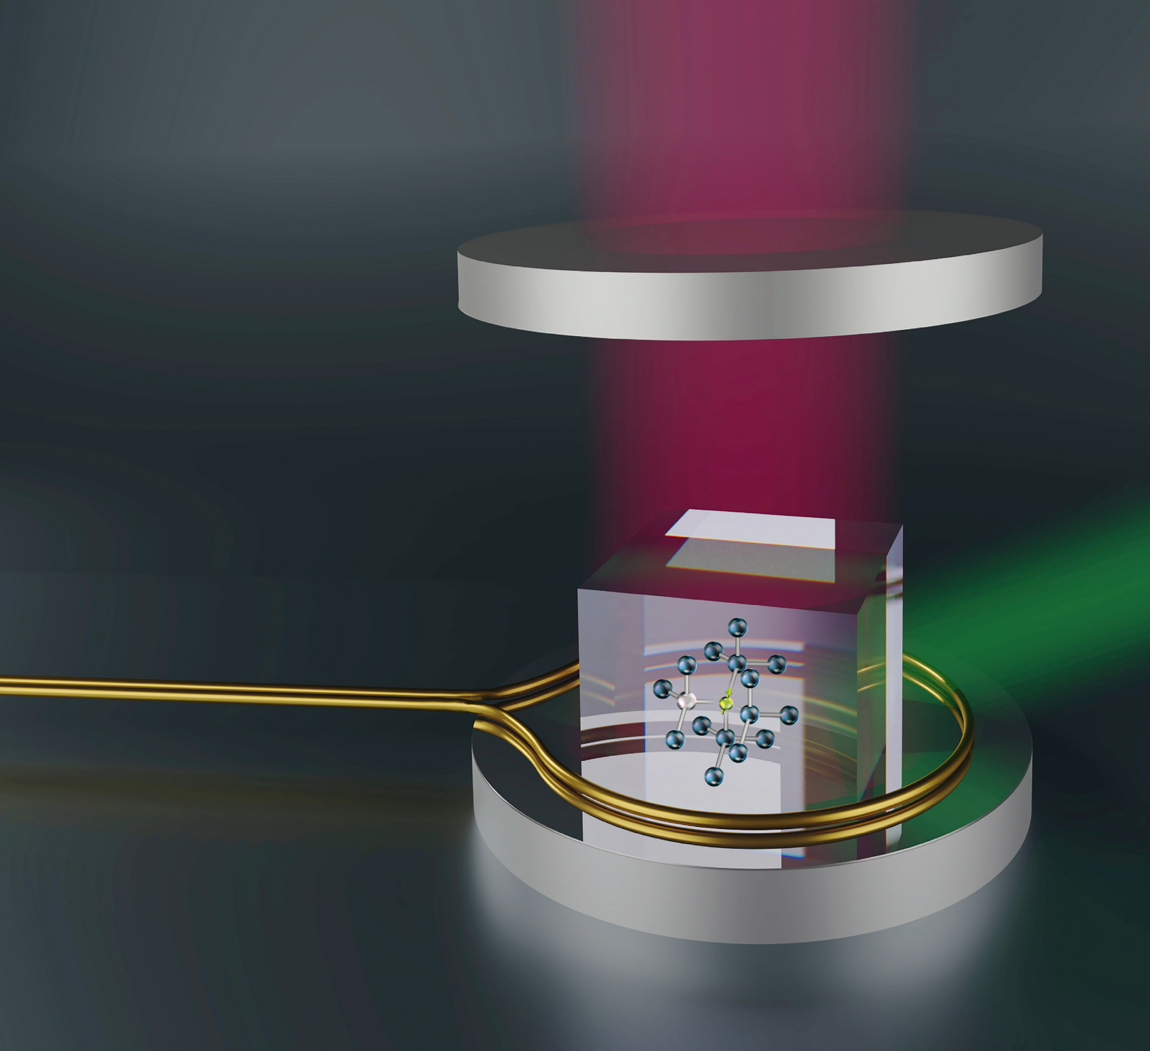 3D illustration of a laser threshold magnetometer